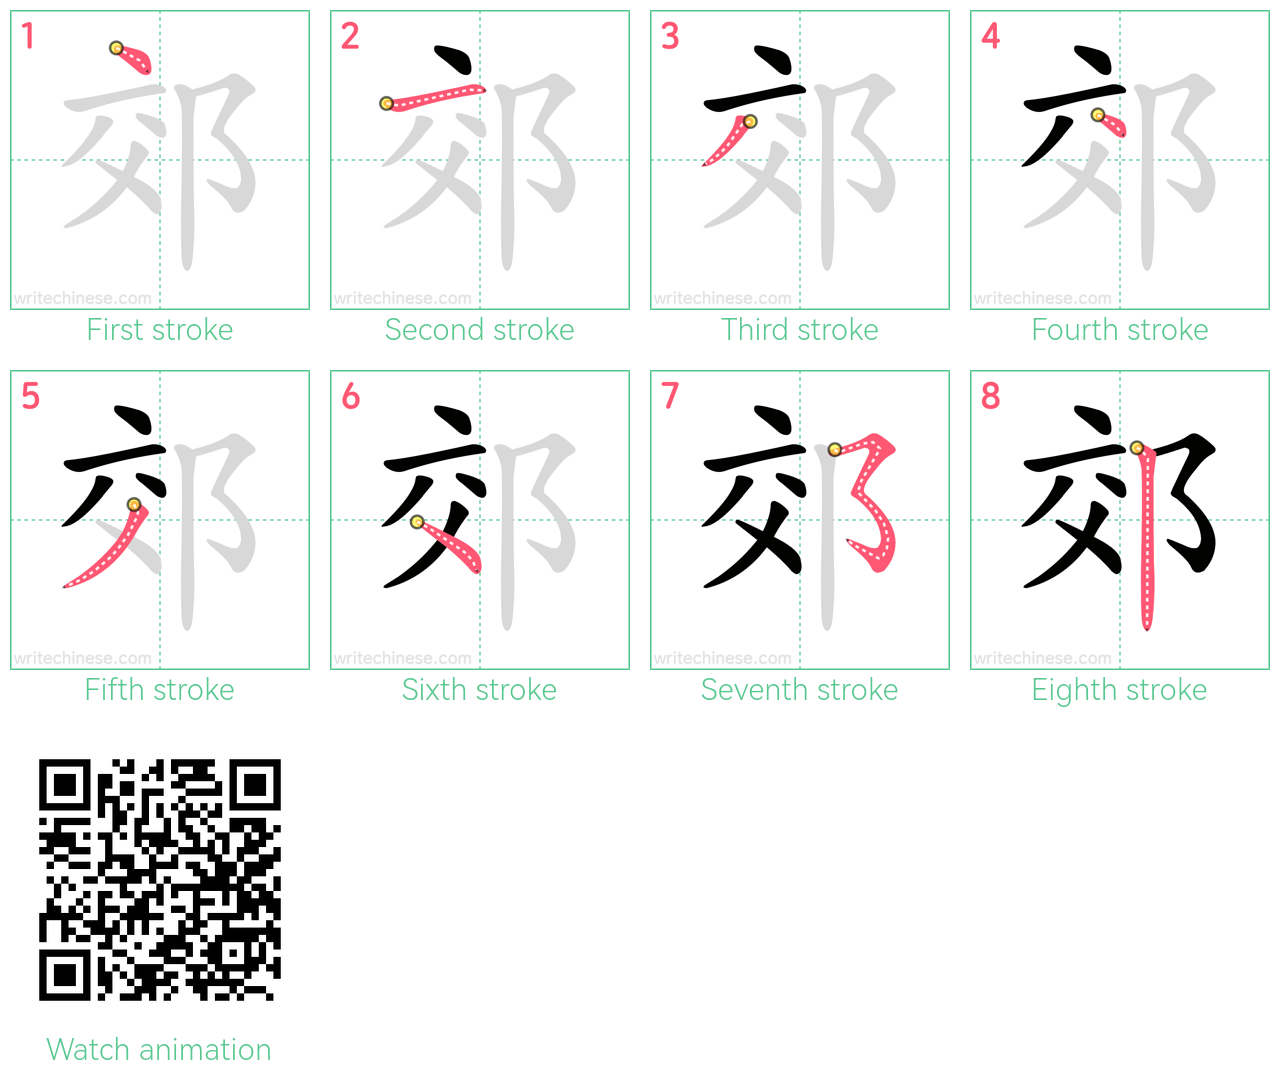 郊 step-by-step stroke order diagrams